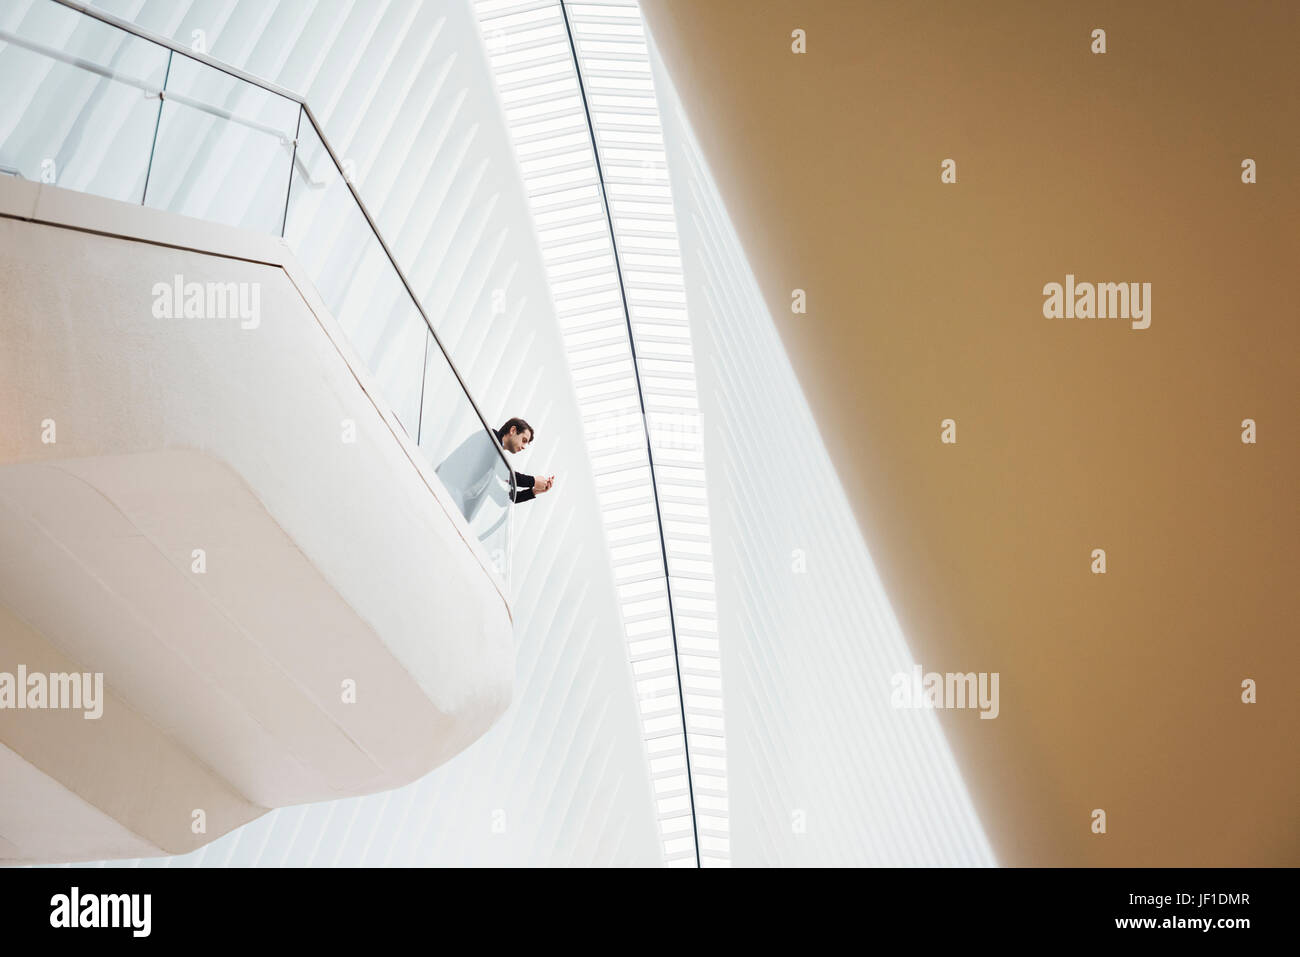 Blick von unten auf ein Mann steht auf einem Balkon in das Oculus Gebäude, Blick auf sein Handy. Balkone über dem Boden im Dachraum. Stockfoto